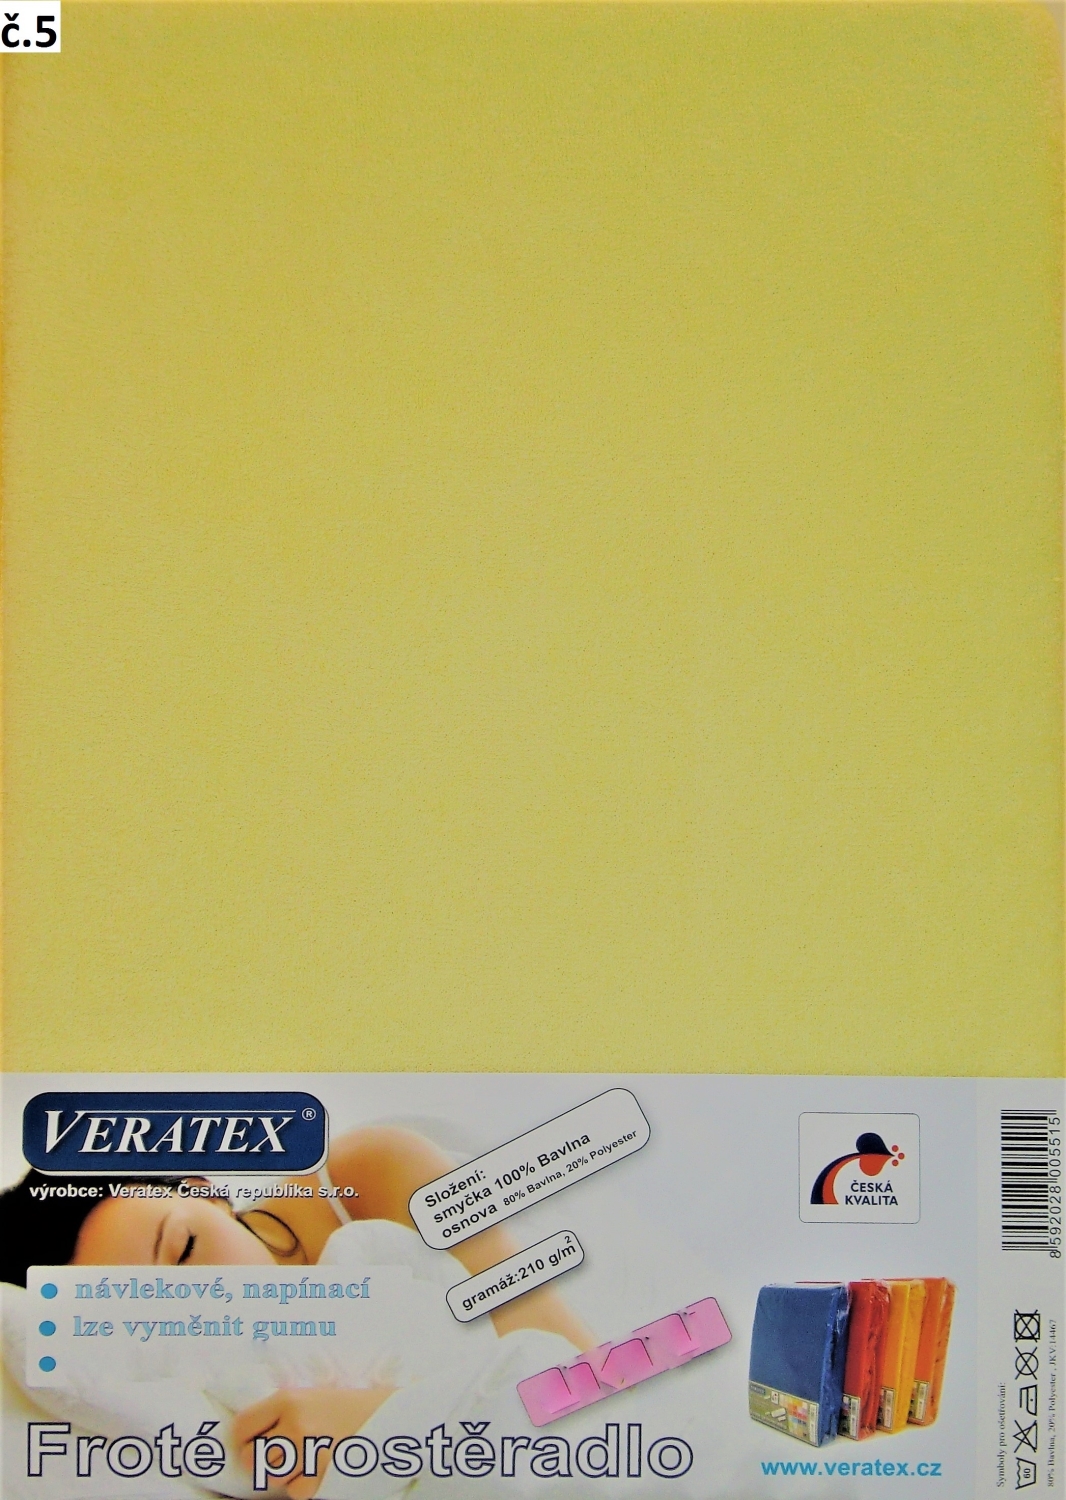 Veratex Froté prostěradlo dvoulůžko 180x200/20cm (č. 5- sv.žlutá)